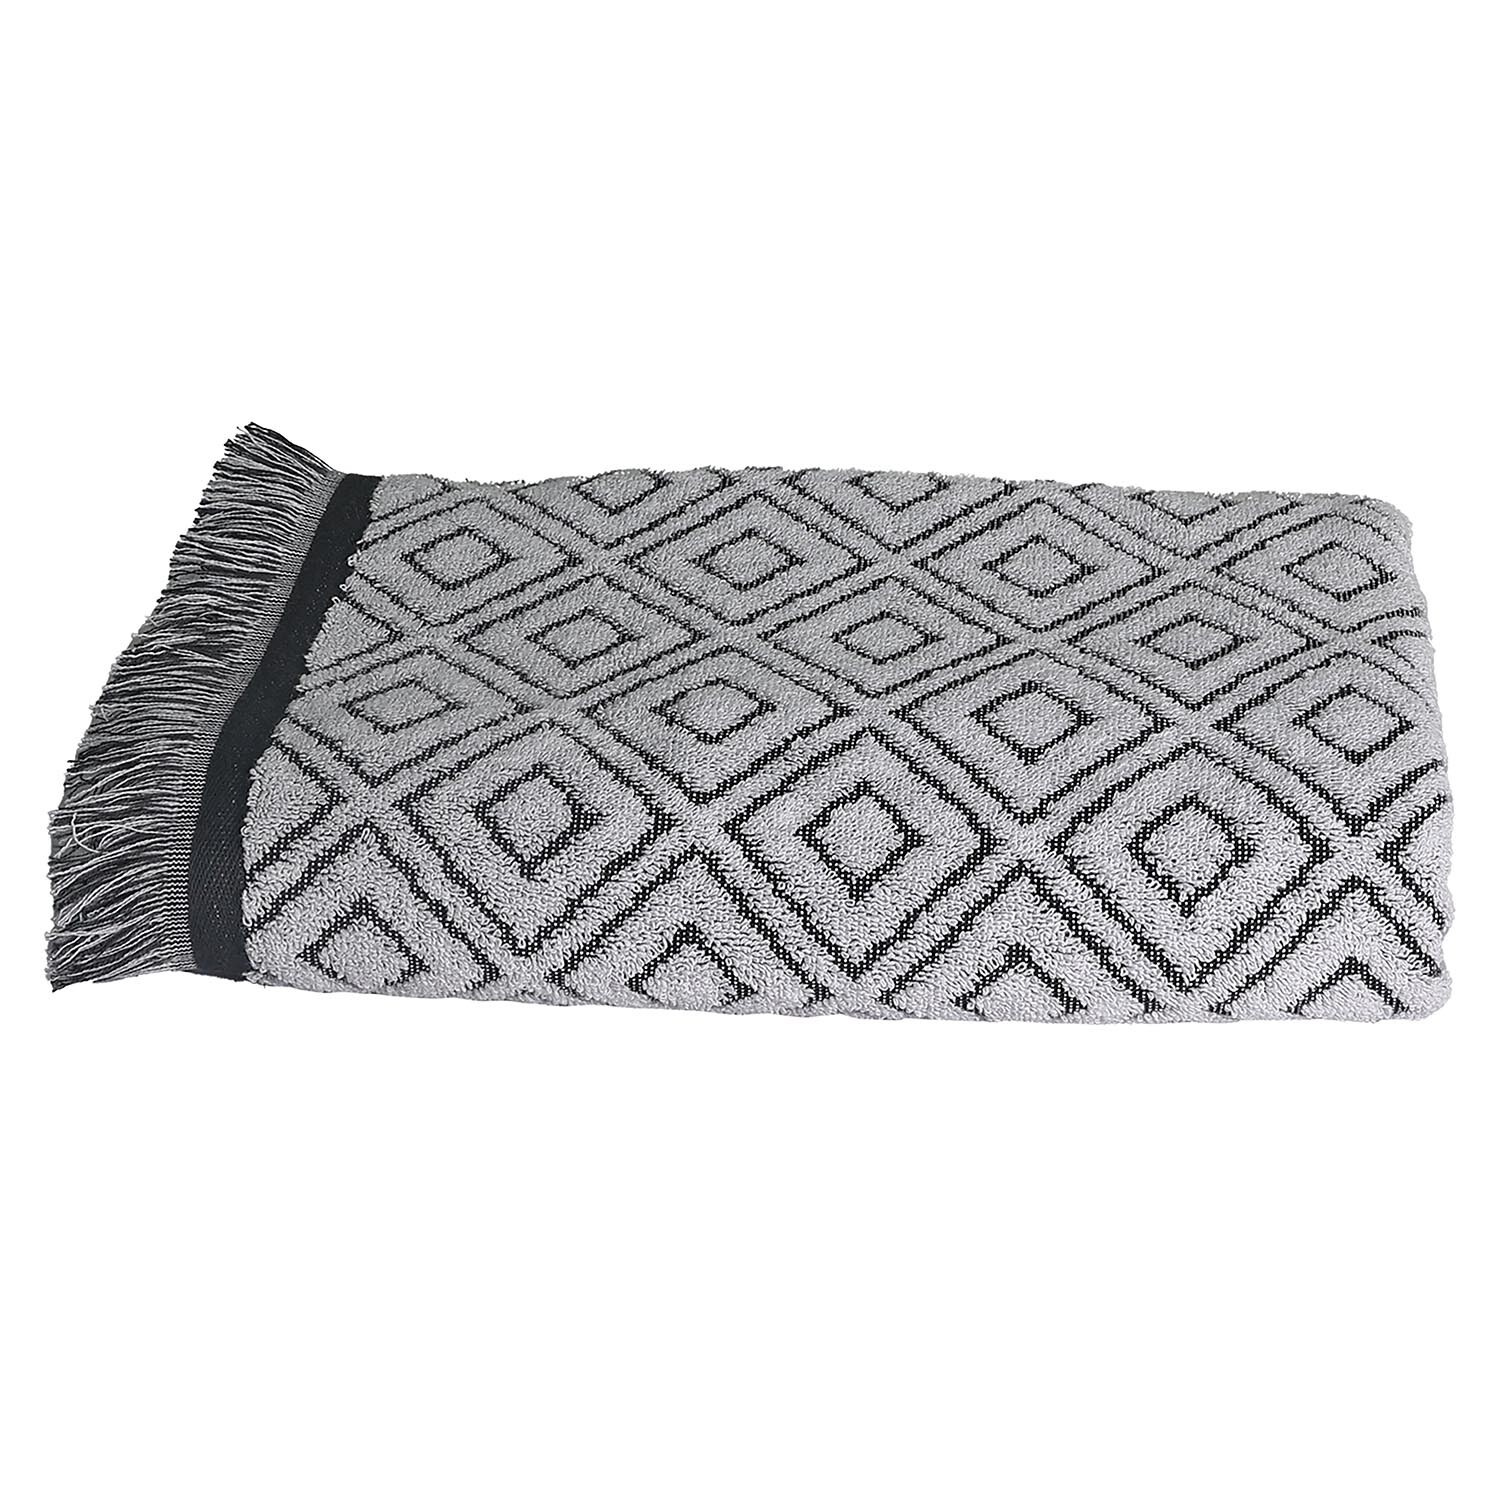 Diamond Fringe Bath Towel - Grey Image 1